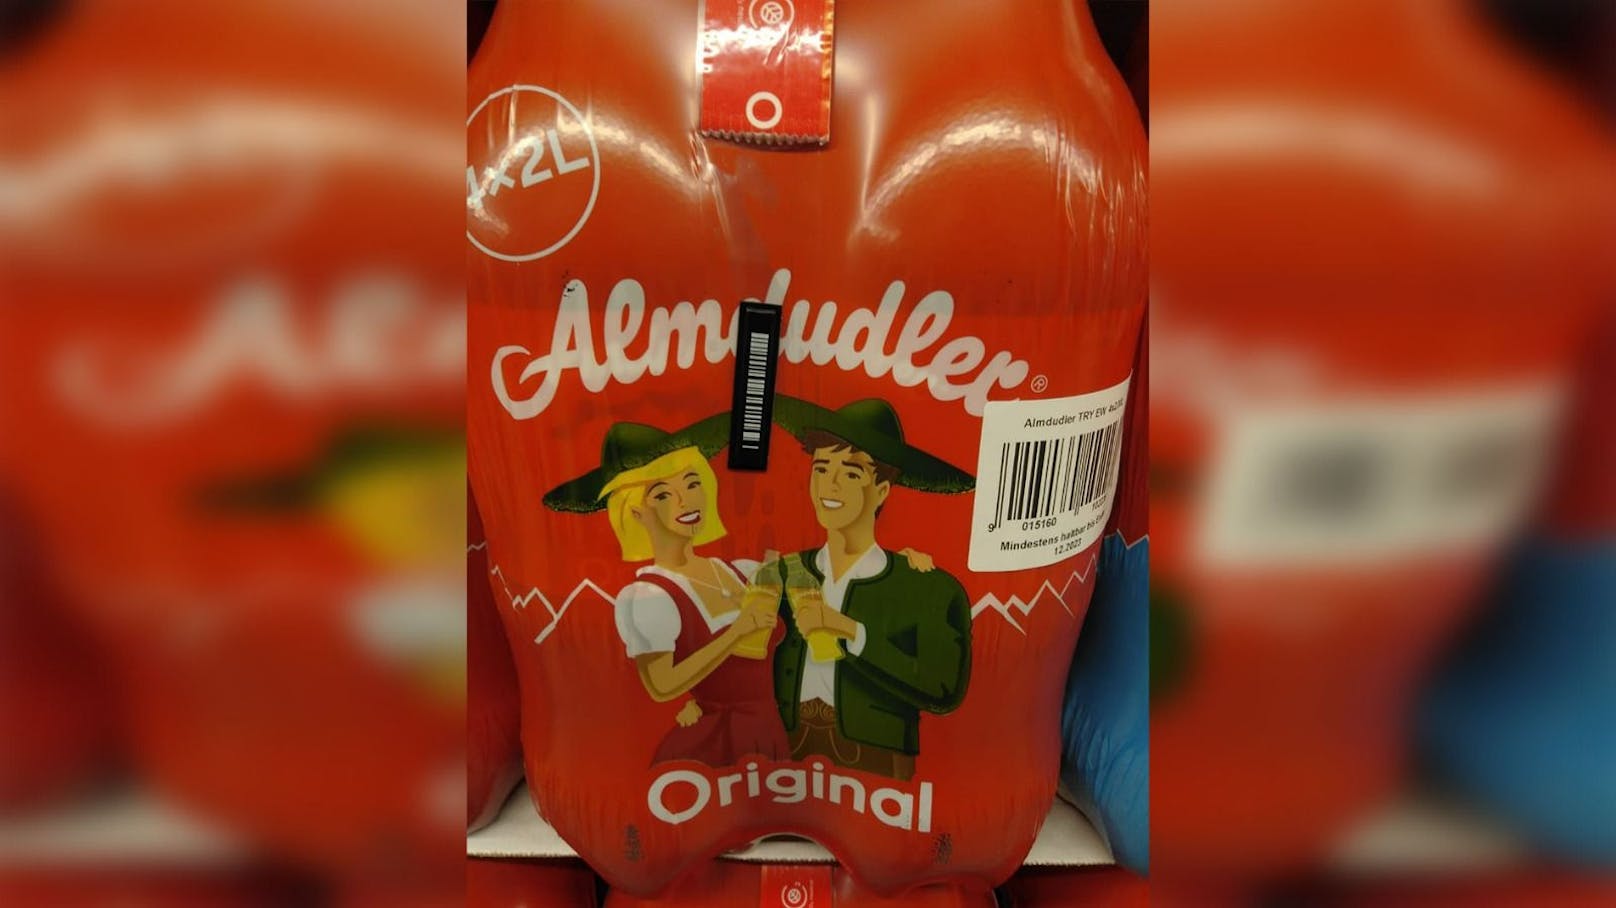 In einem Supermarkt in Rudolfsheim-Fünfhaus wurden Almdudler Flaschen gegen Diebstahl gesichert.